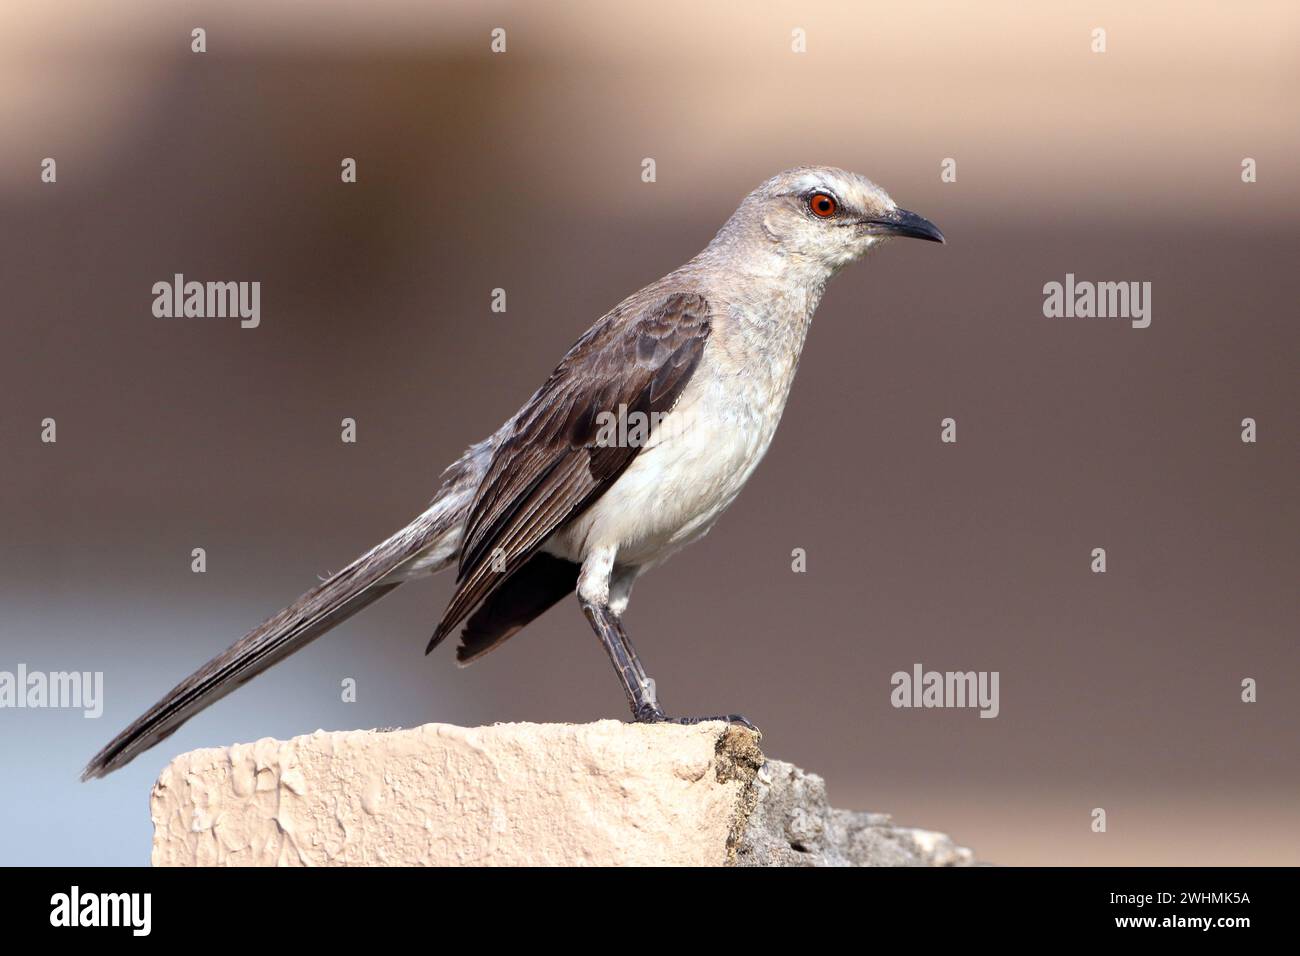 Mockingbird tropical (Mimus gilvus), isolé, perché sur un mur sur fond brun ton sur ton Banque D'Images